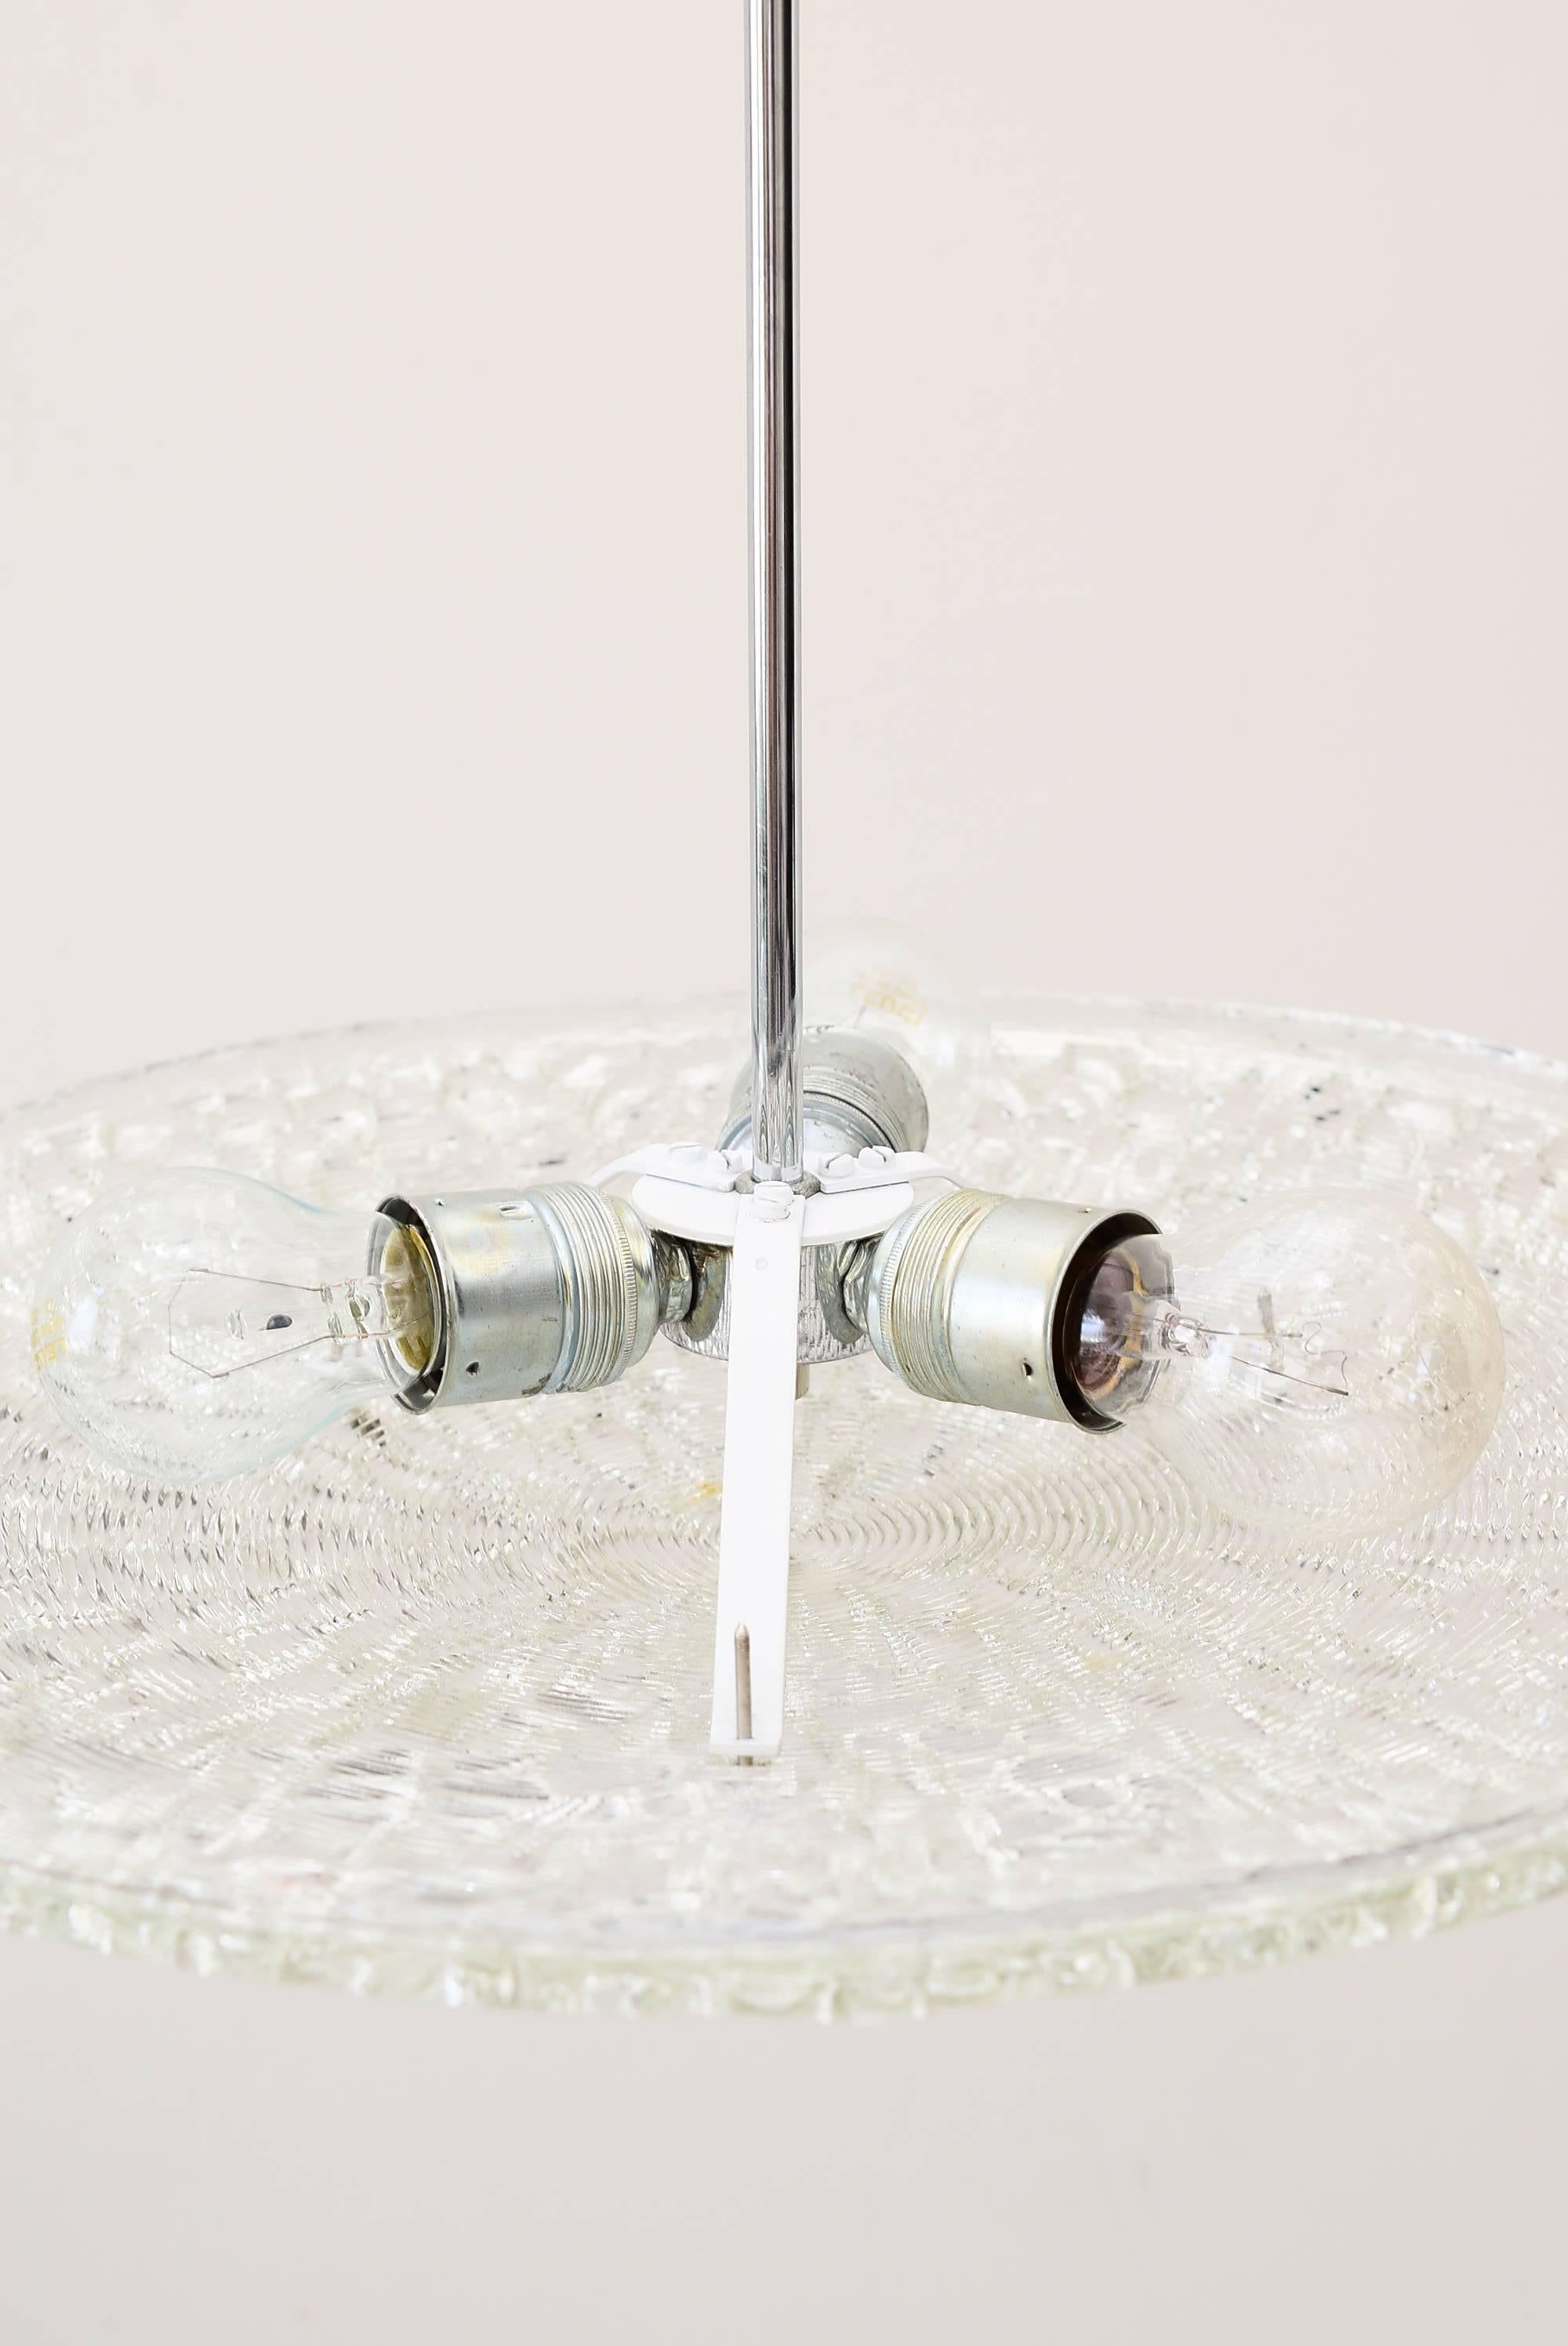 Zwei Kalmar-Lampen mit strukturiertem Glas, Wien, 1950.
Schöne kuppelförmige Deckenhalterung von J.T. Kalmar. Dickes Glas mit unterschiedlichen Texturen auf jeder Seite und vernickelten Beschlägen. Sehr guter Zustand.
2 Stück sind verfügbar, Preis